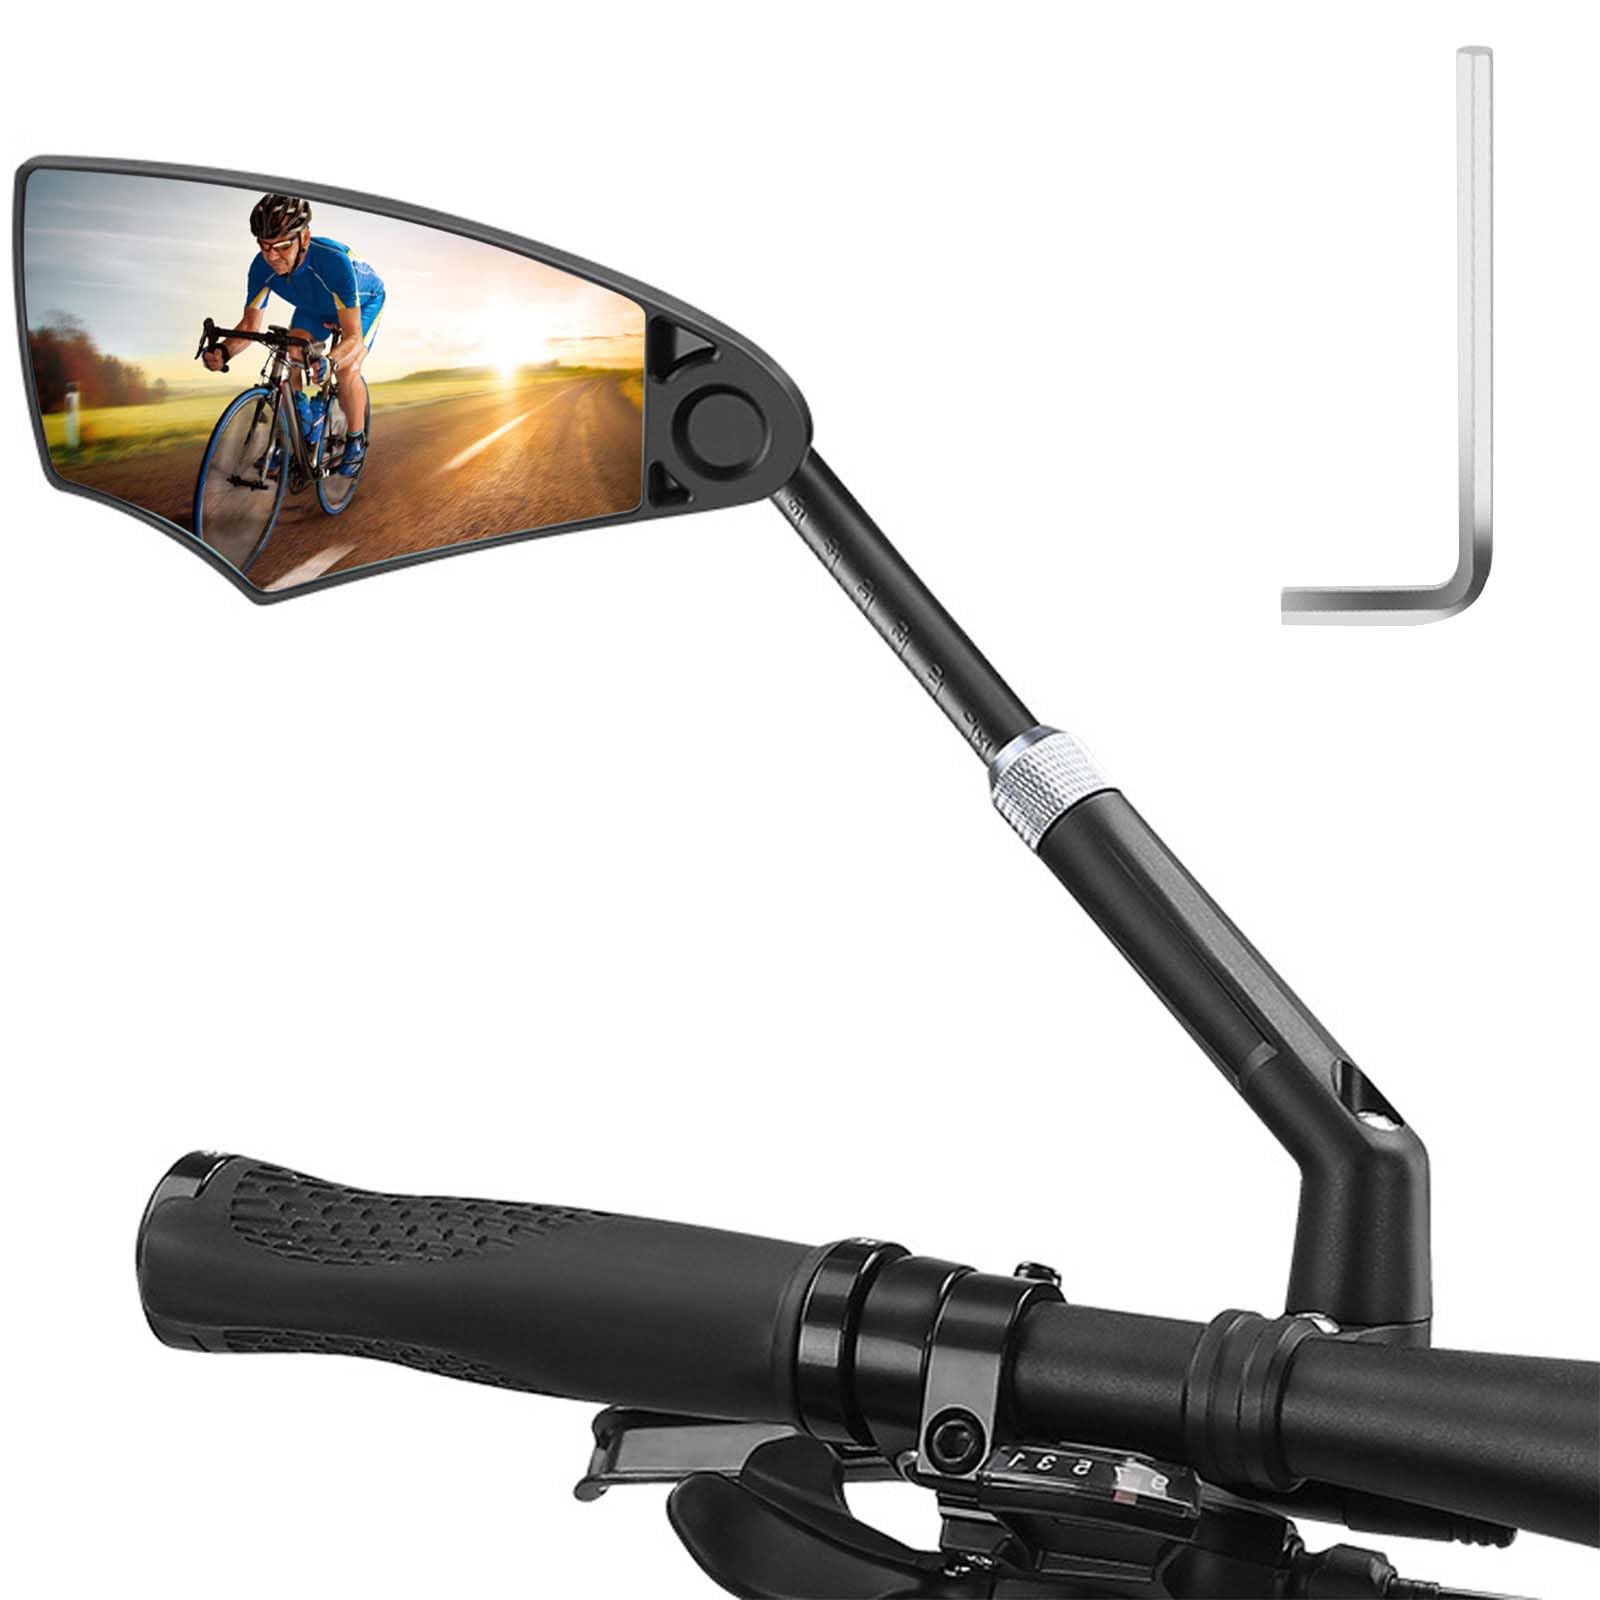 Fahrradspiegel Dehnbar für Lenker 20-23mm, HD Schlagfestes Echtglas Fahrradrückspiegel, 360°Rückspiegel mit Große Spiegelfläche, Lenkerspiegel Fahrrad Spiegel für MTB Rennräder Ebike (Links) von Naapesi